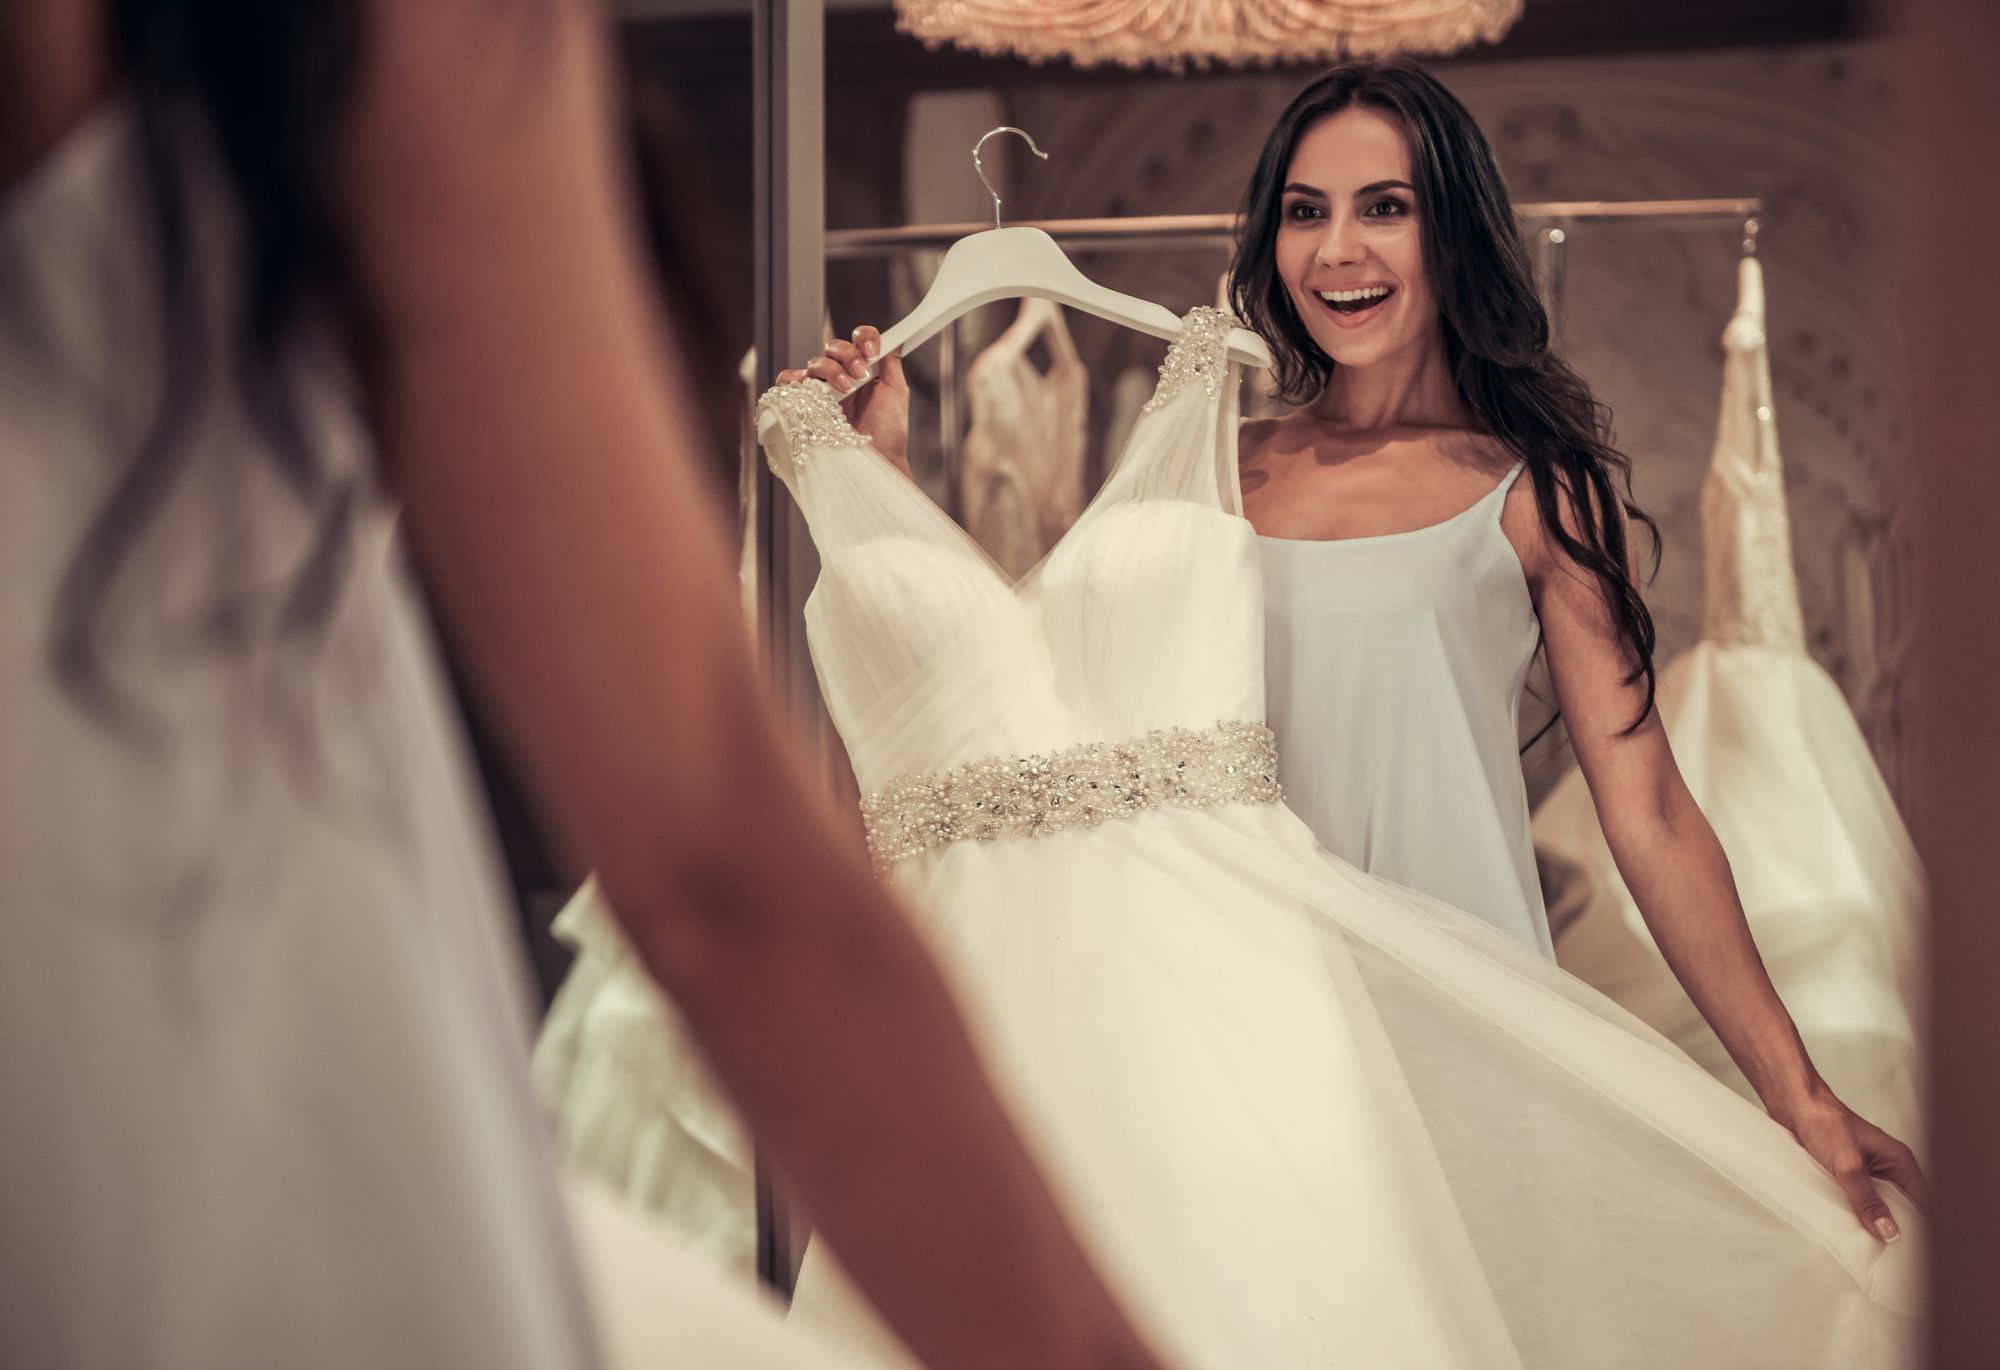 Eine Braut betrachtet ihr Hochzeitskleid im Spiegel.